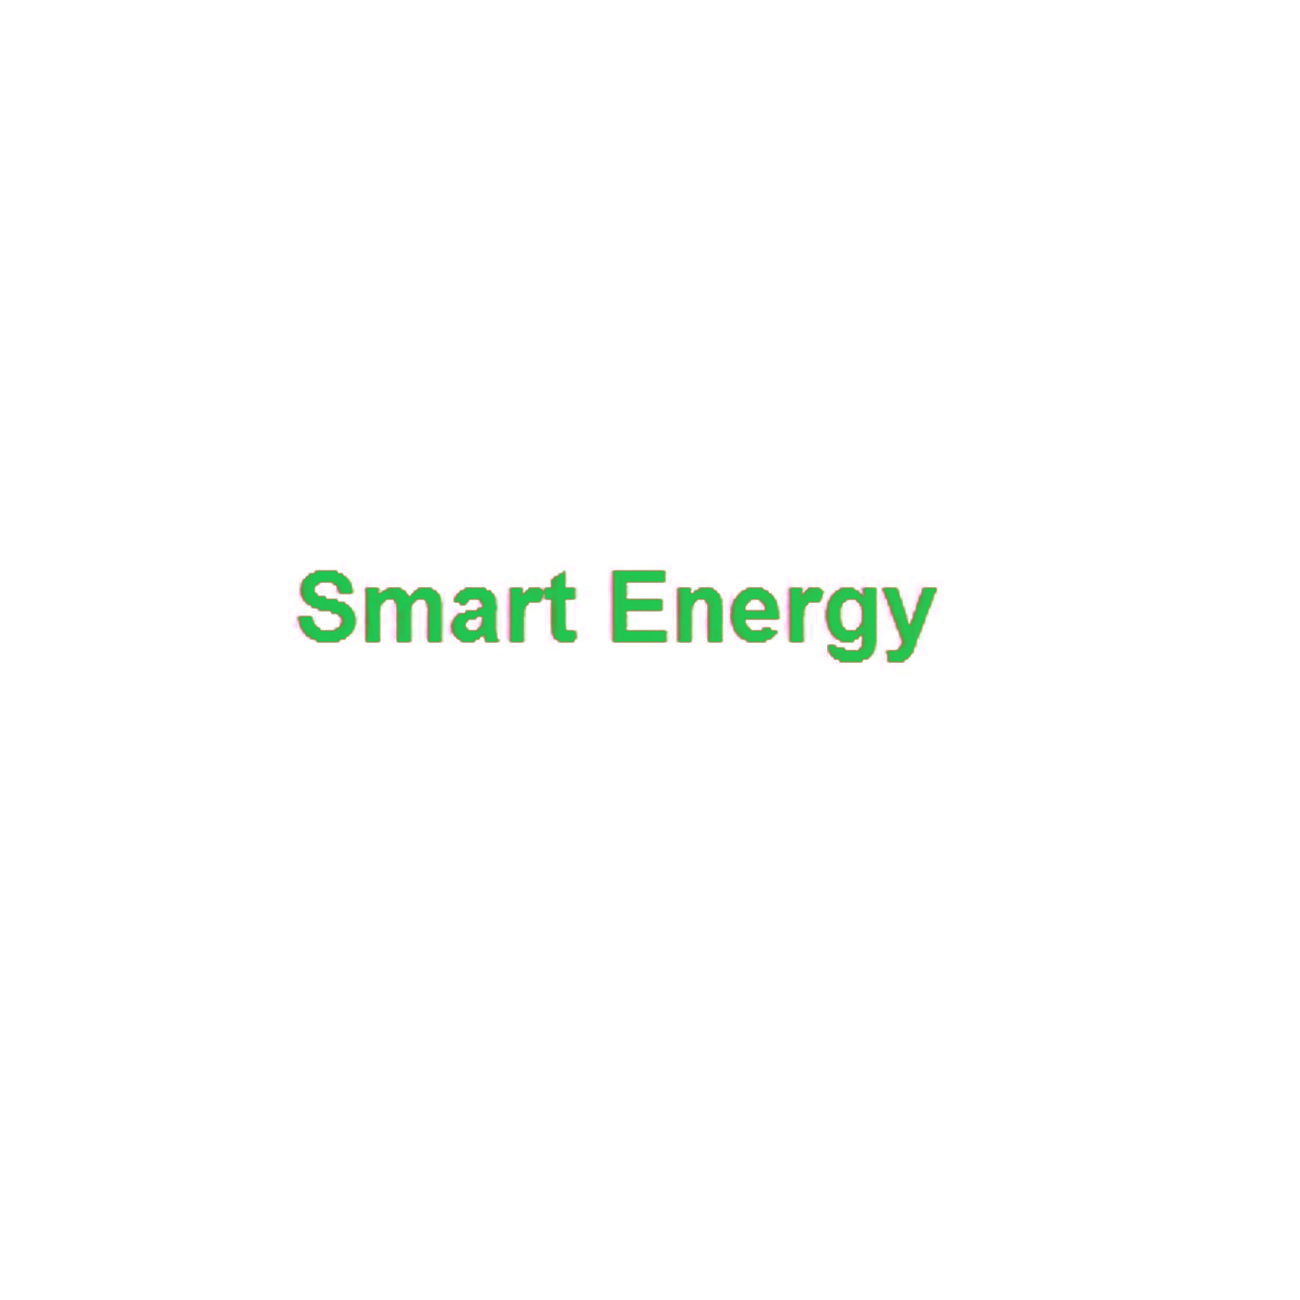 SMART ENERGY